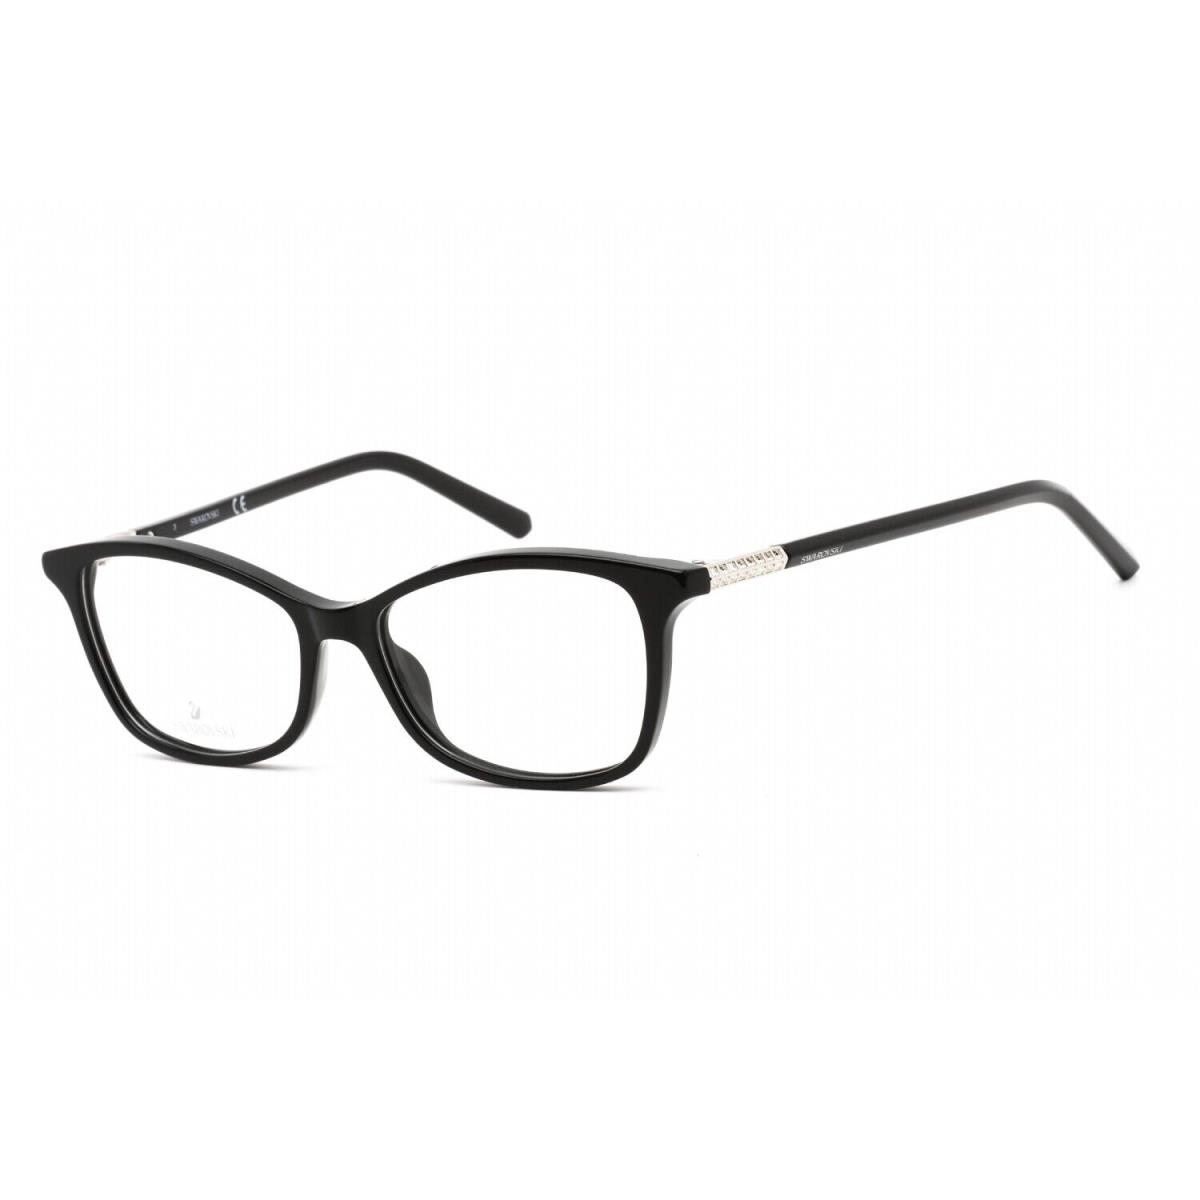 Swarovski SK 5239 001 Eyeglasses Black Frame 51mm